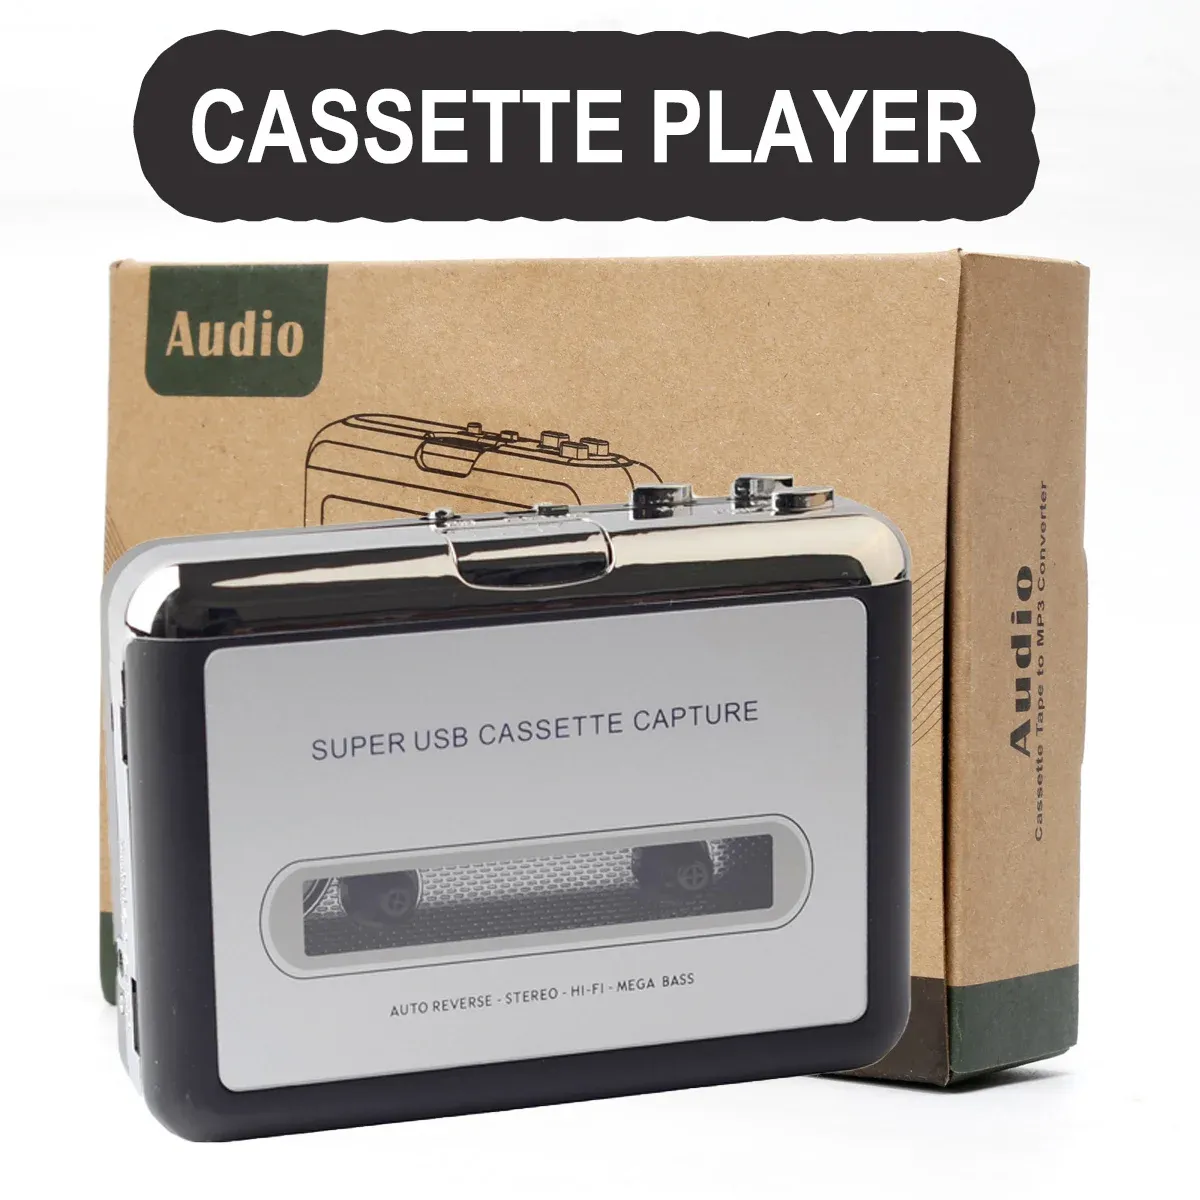 플레이어 다중 목적 카세트 플레이어 mp3/CD 오디오 자동 반전 USB 카세트 테이프 플레이어 마이크 카세트 MP3 변환기 워크맨에 내장